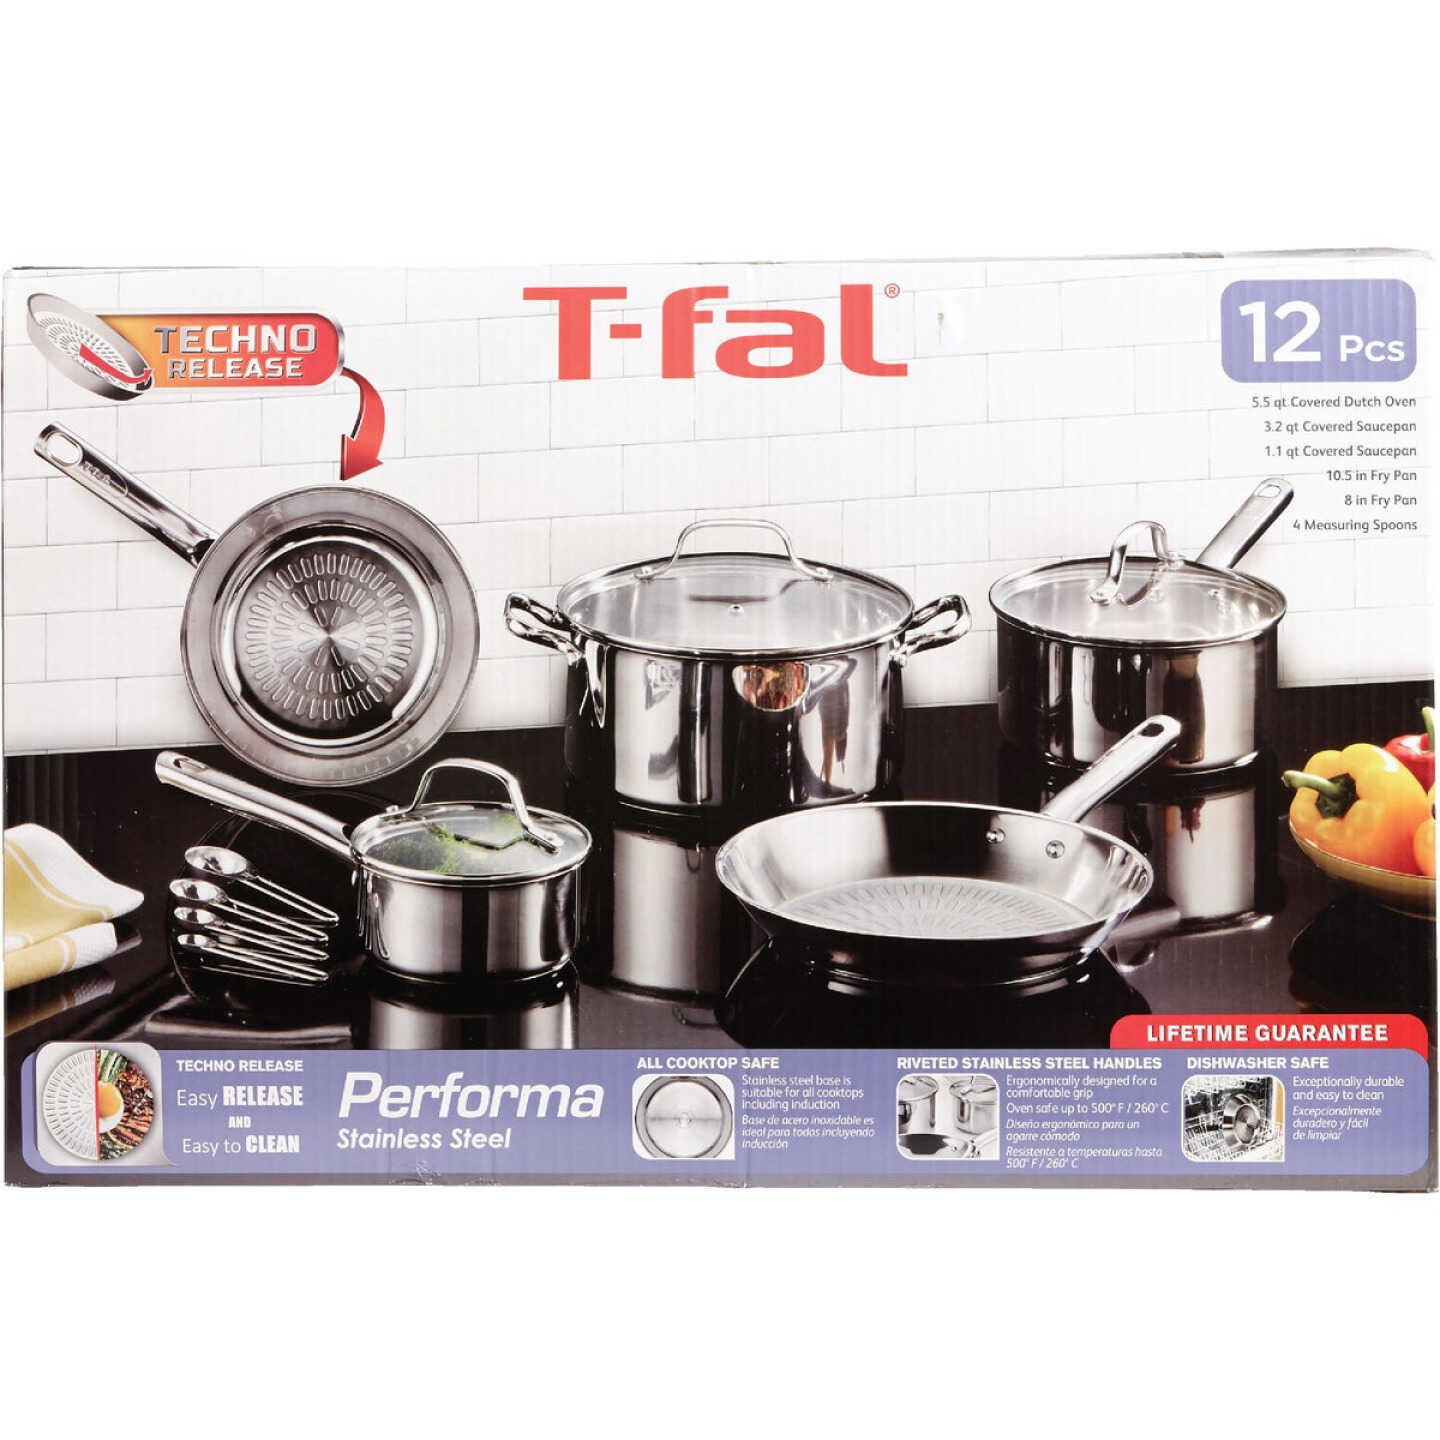 T Fal Comfort Fry Pan Set - 2 pans